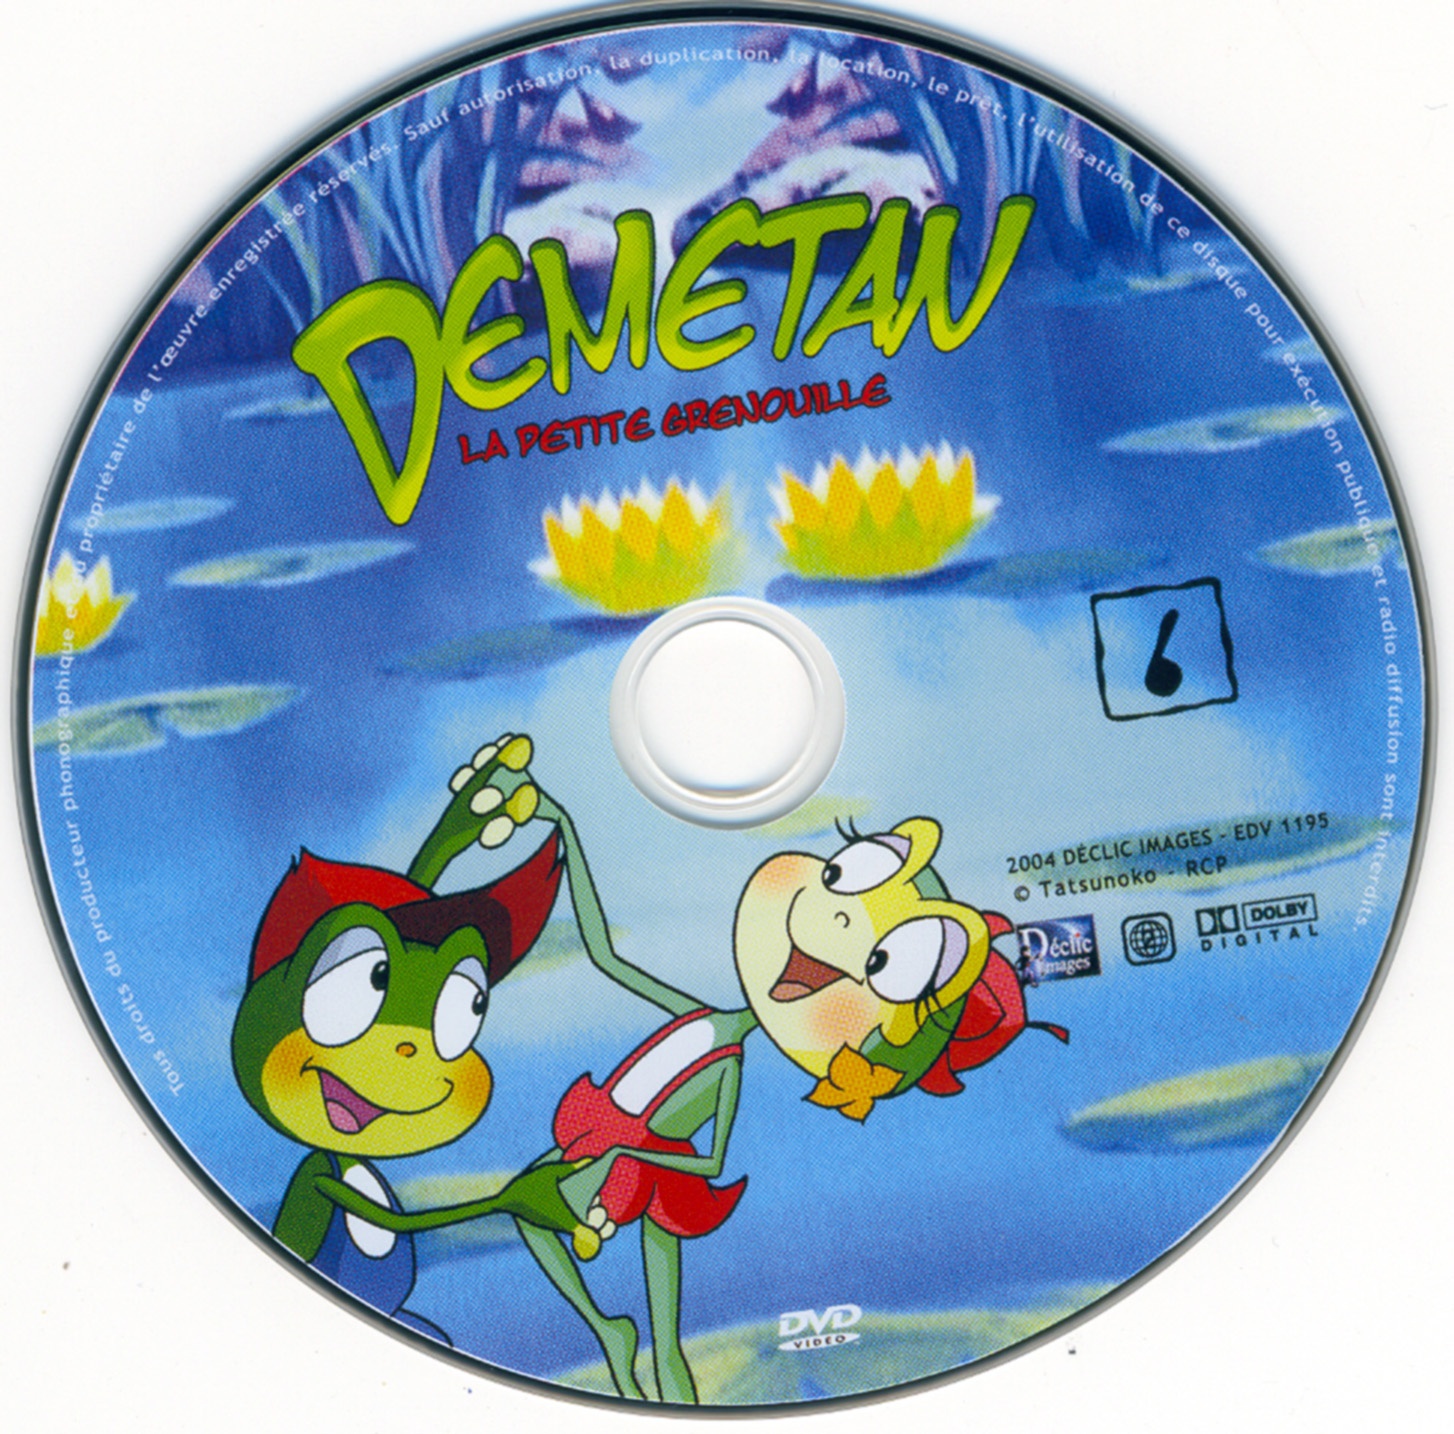 Demetan DVD 06